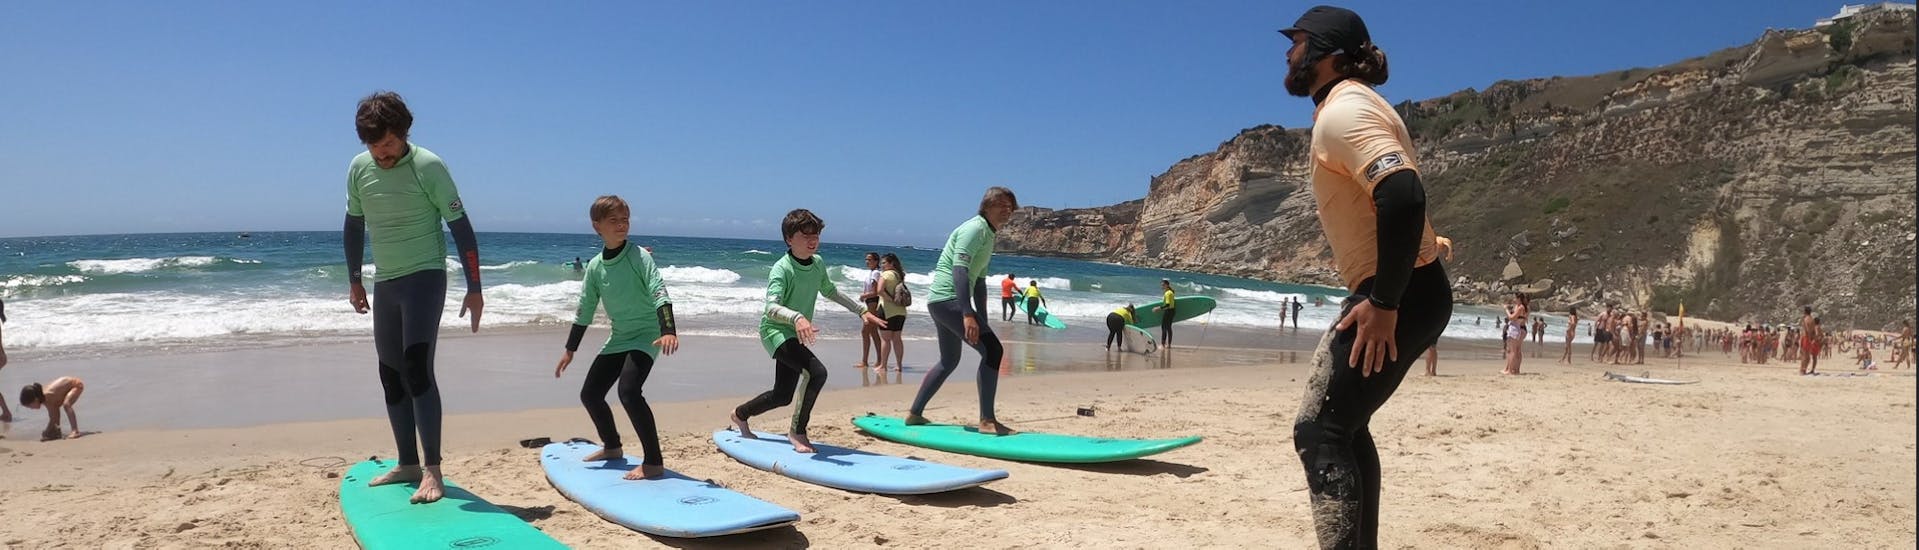 Surflessen in Nazaré vanaf 6 jaar voor alle niveaus.